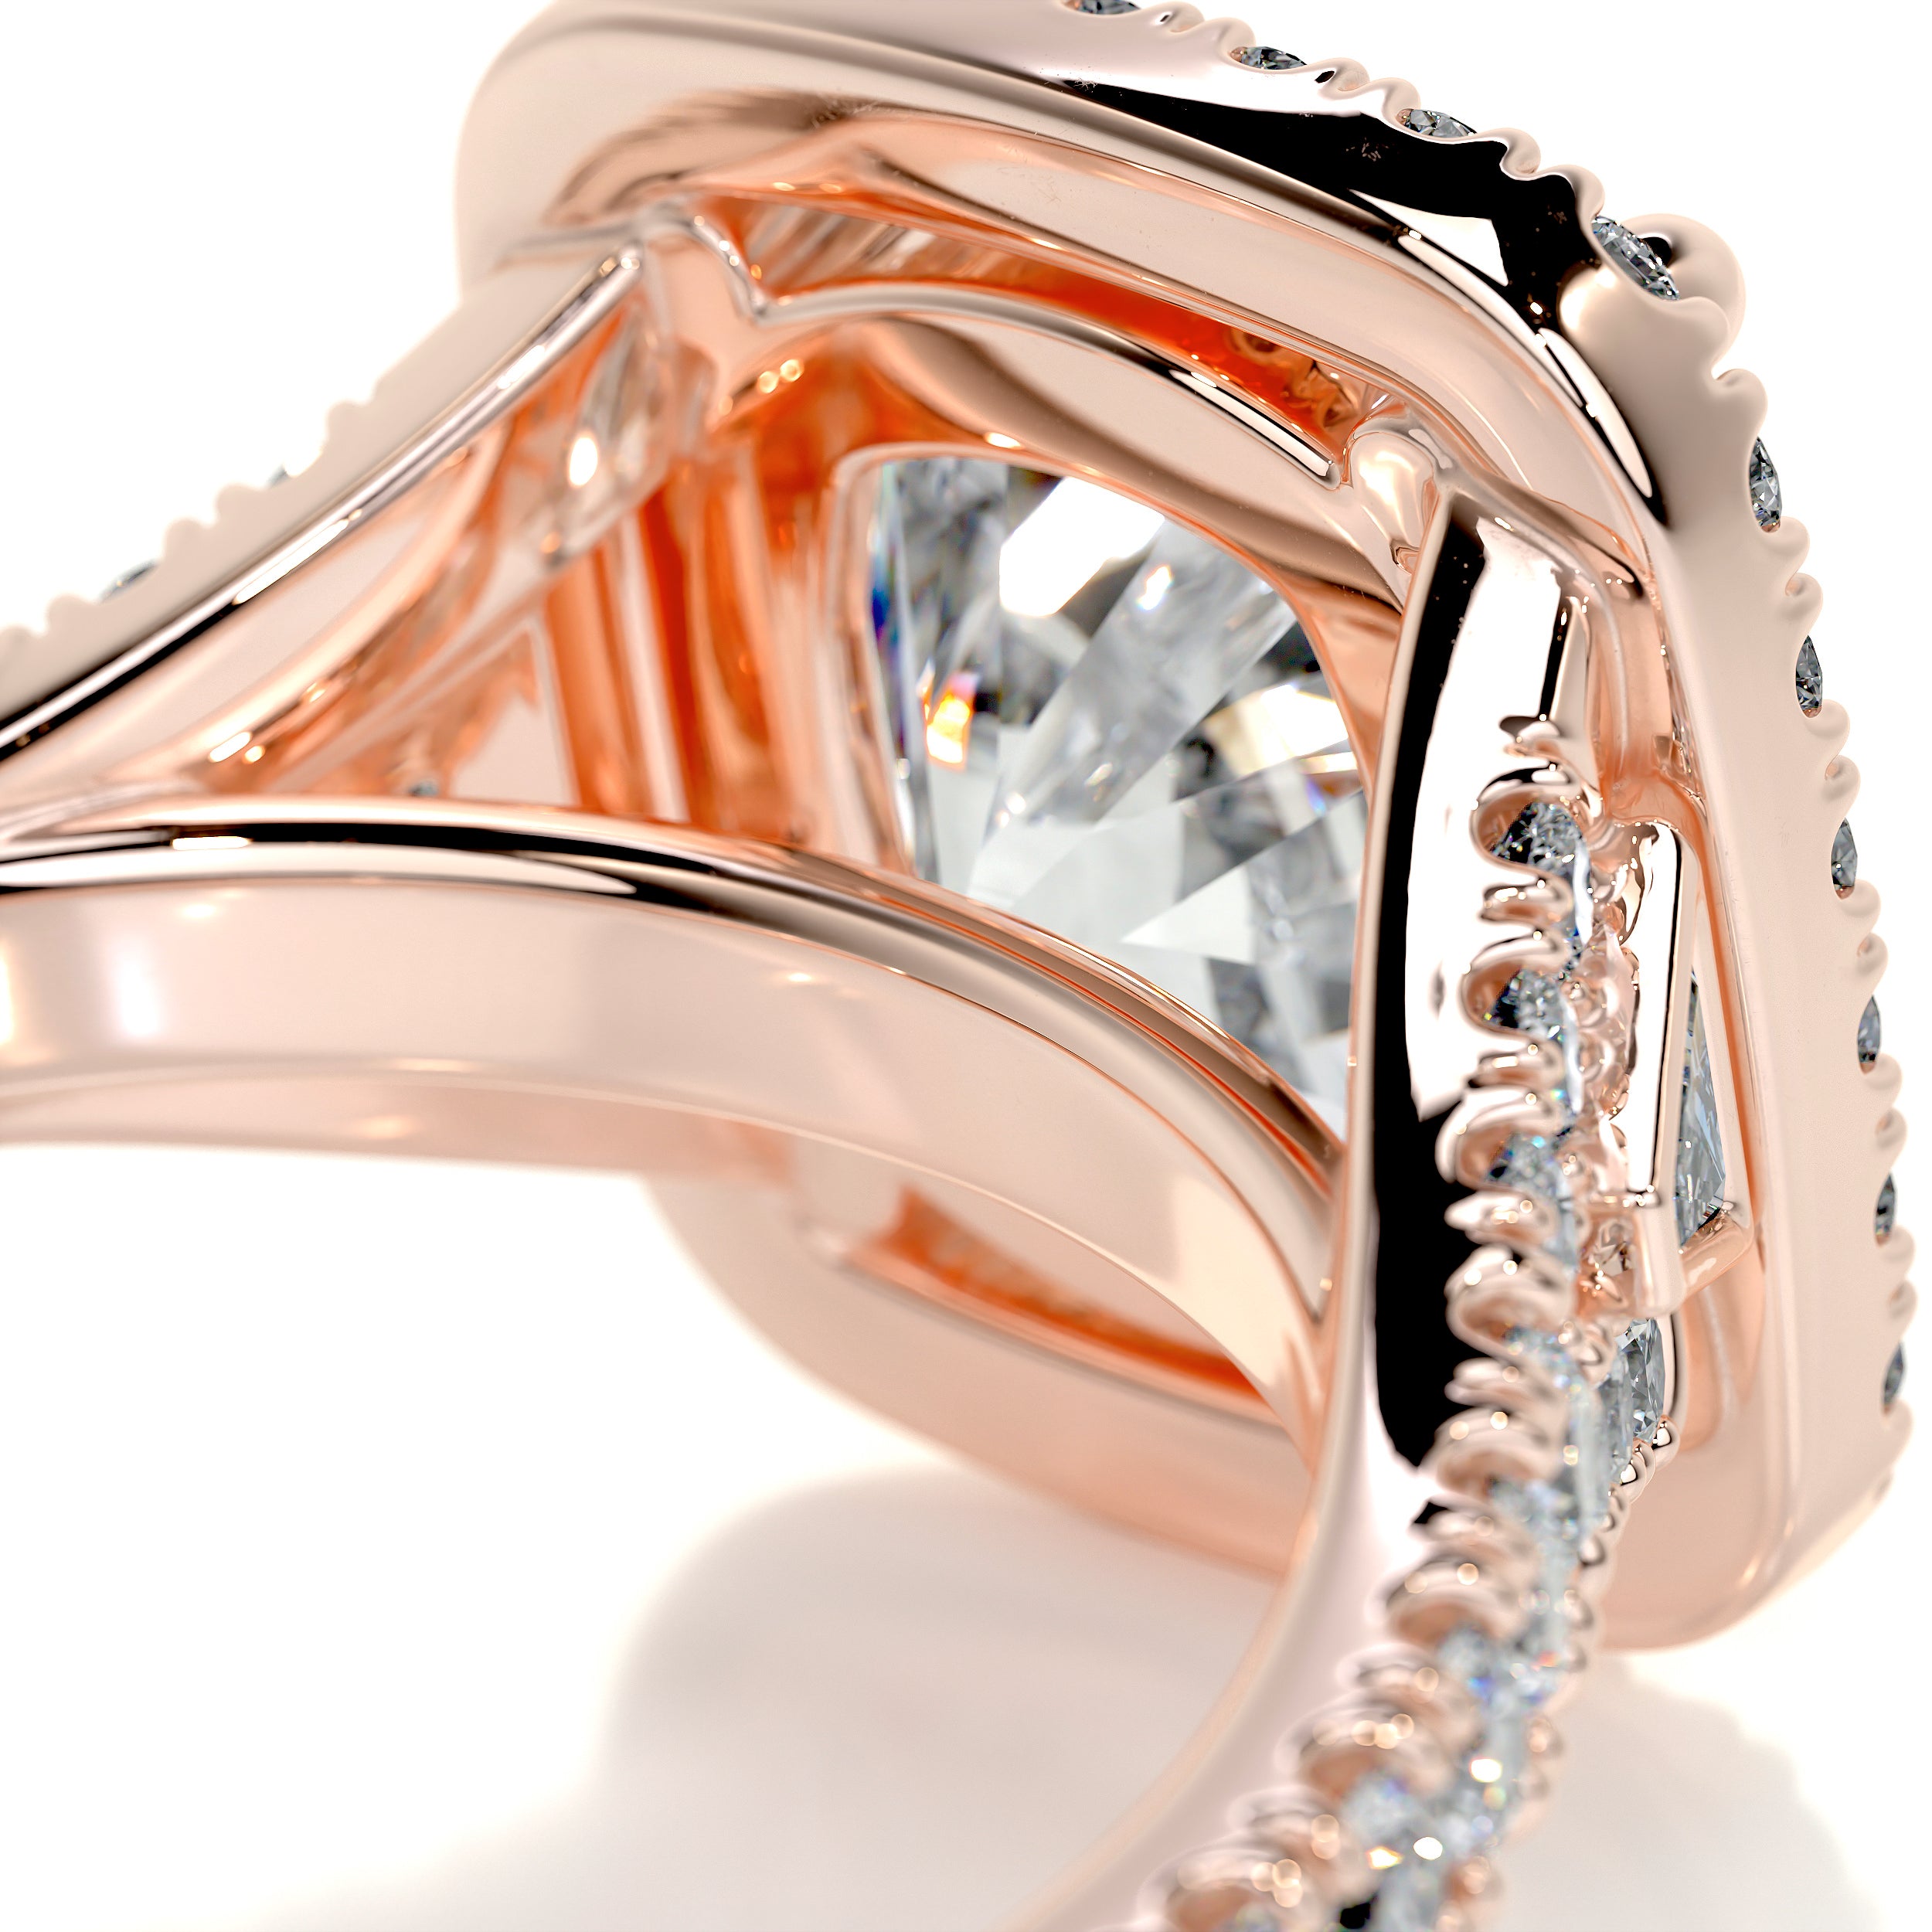 Lissete Diamond Engagement Ring   (3.65 Carat) -14K Rose Gold